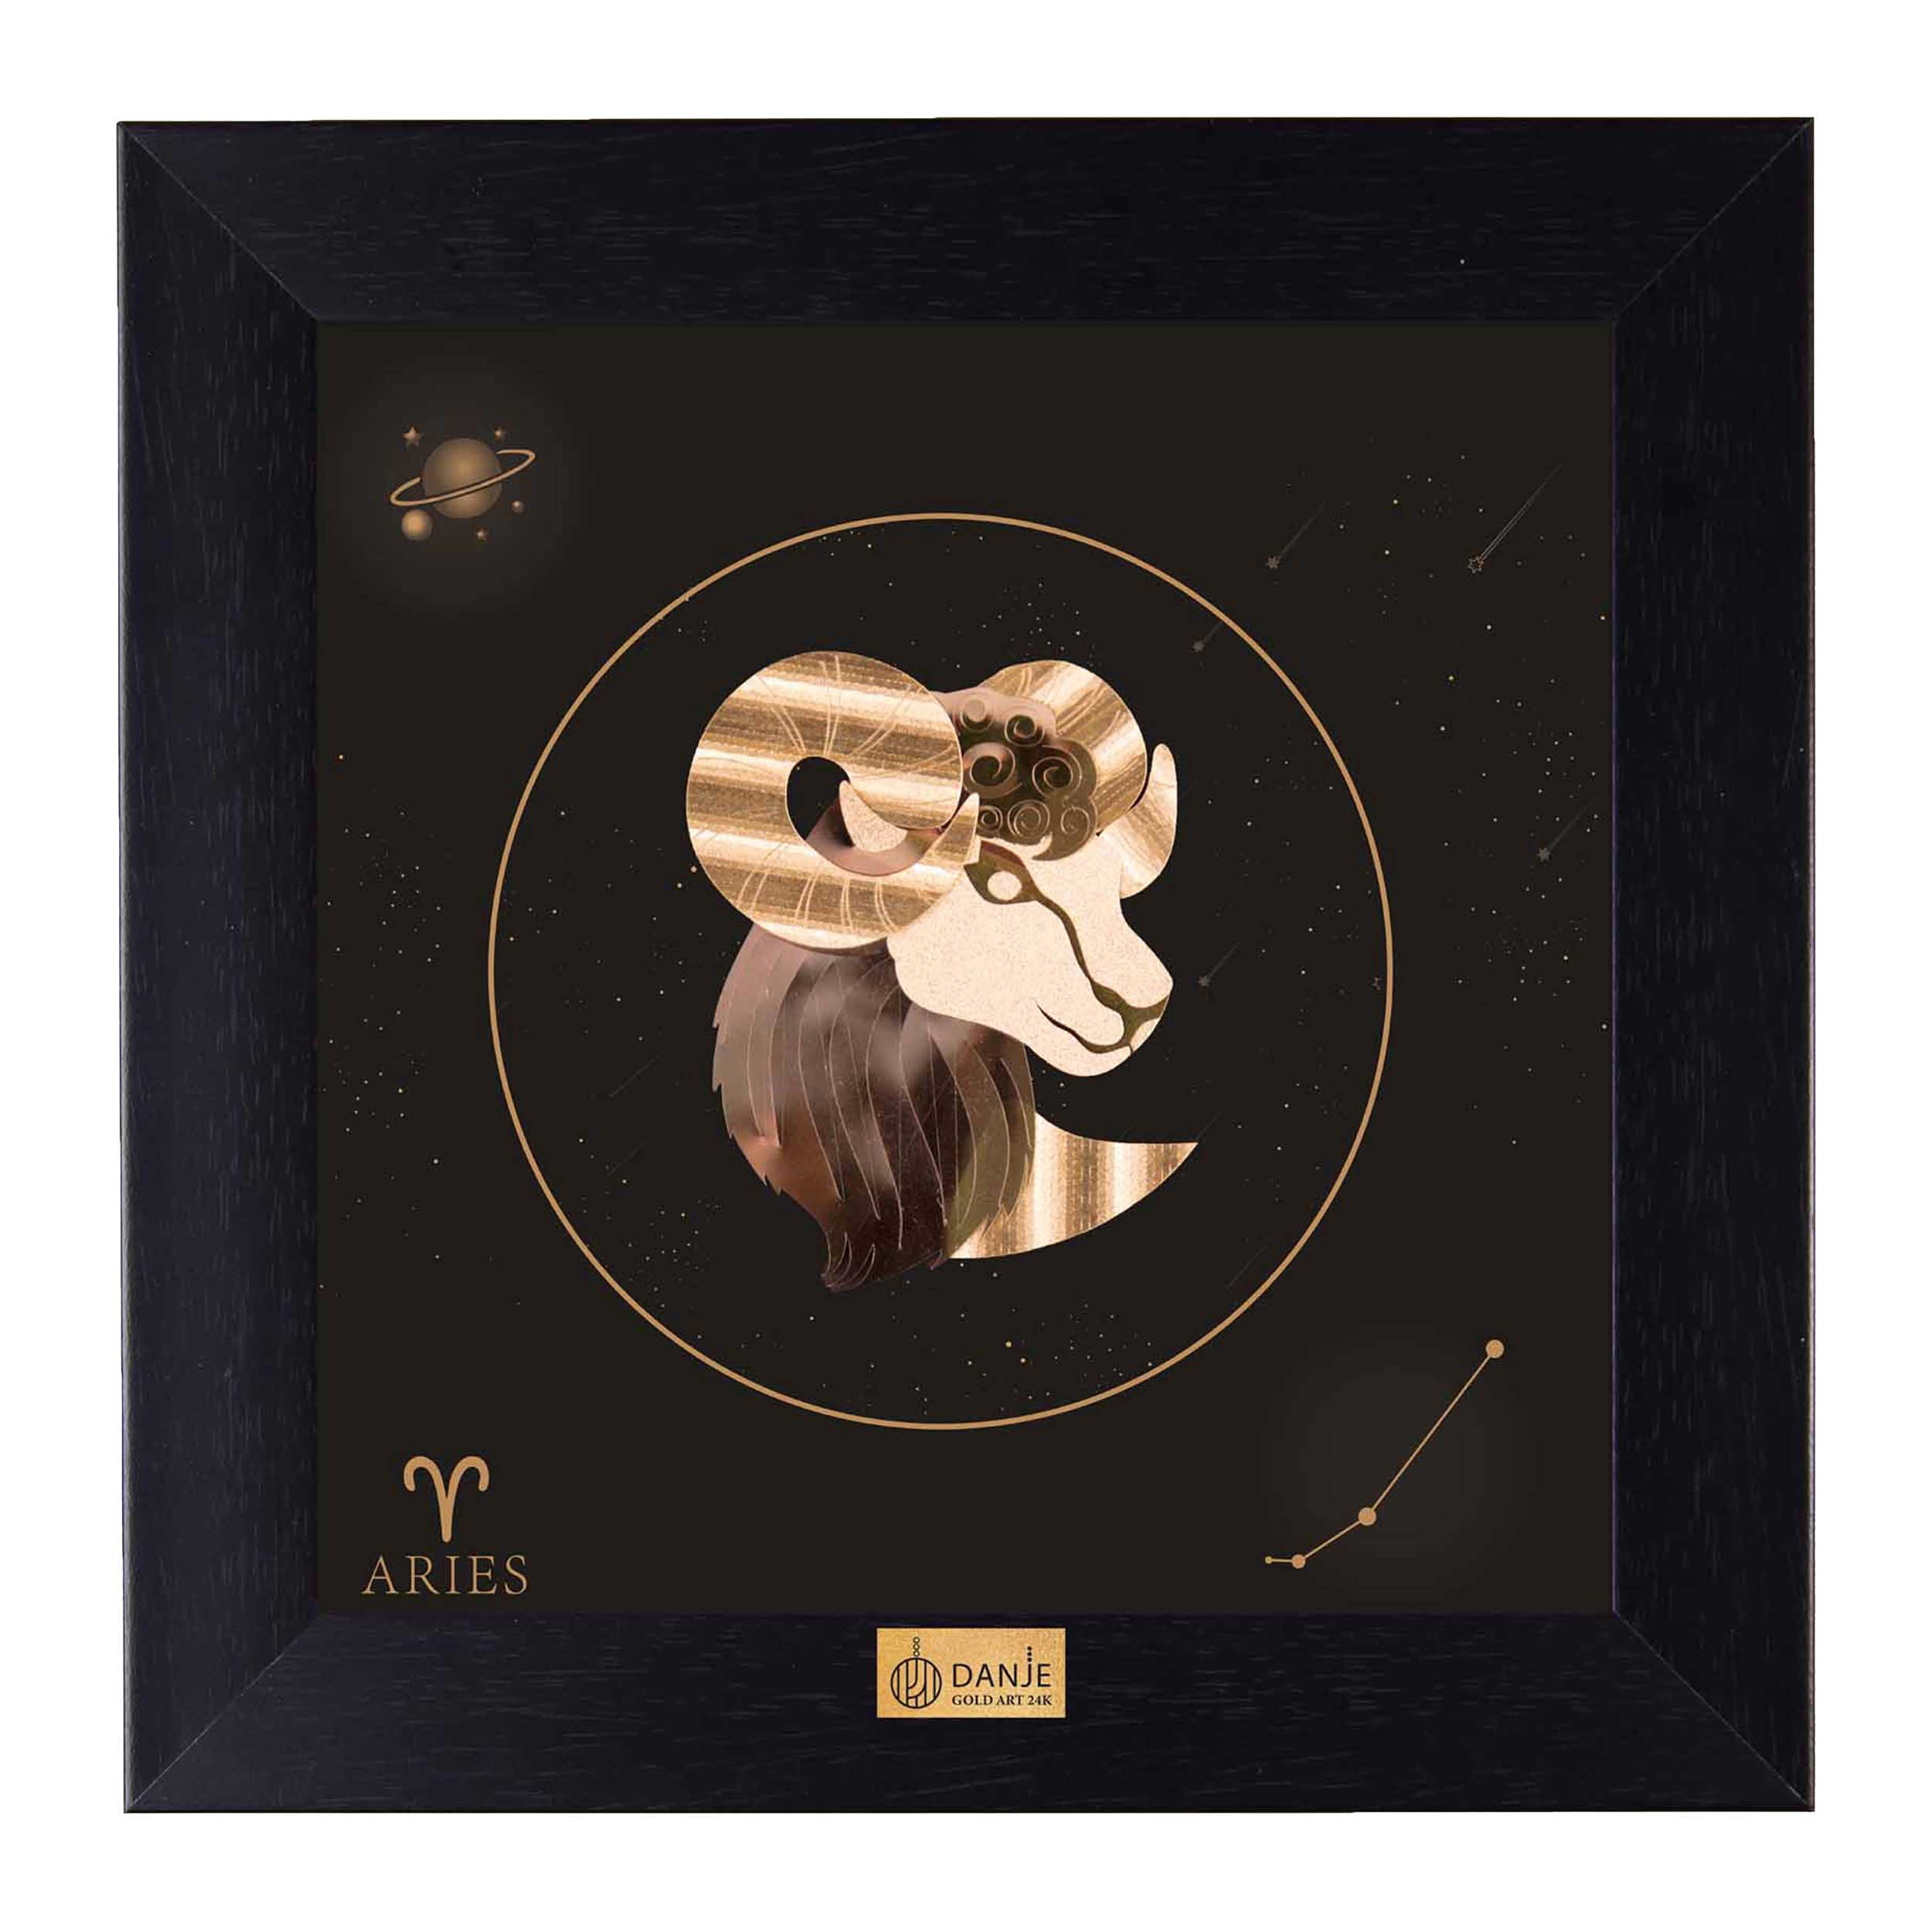 24 carat gold leaf board with PVC frame, symbol of April, Danjeh brand